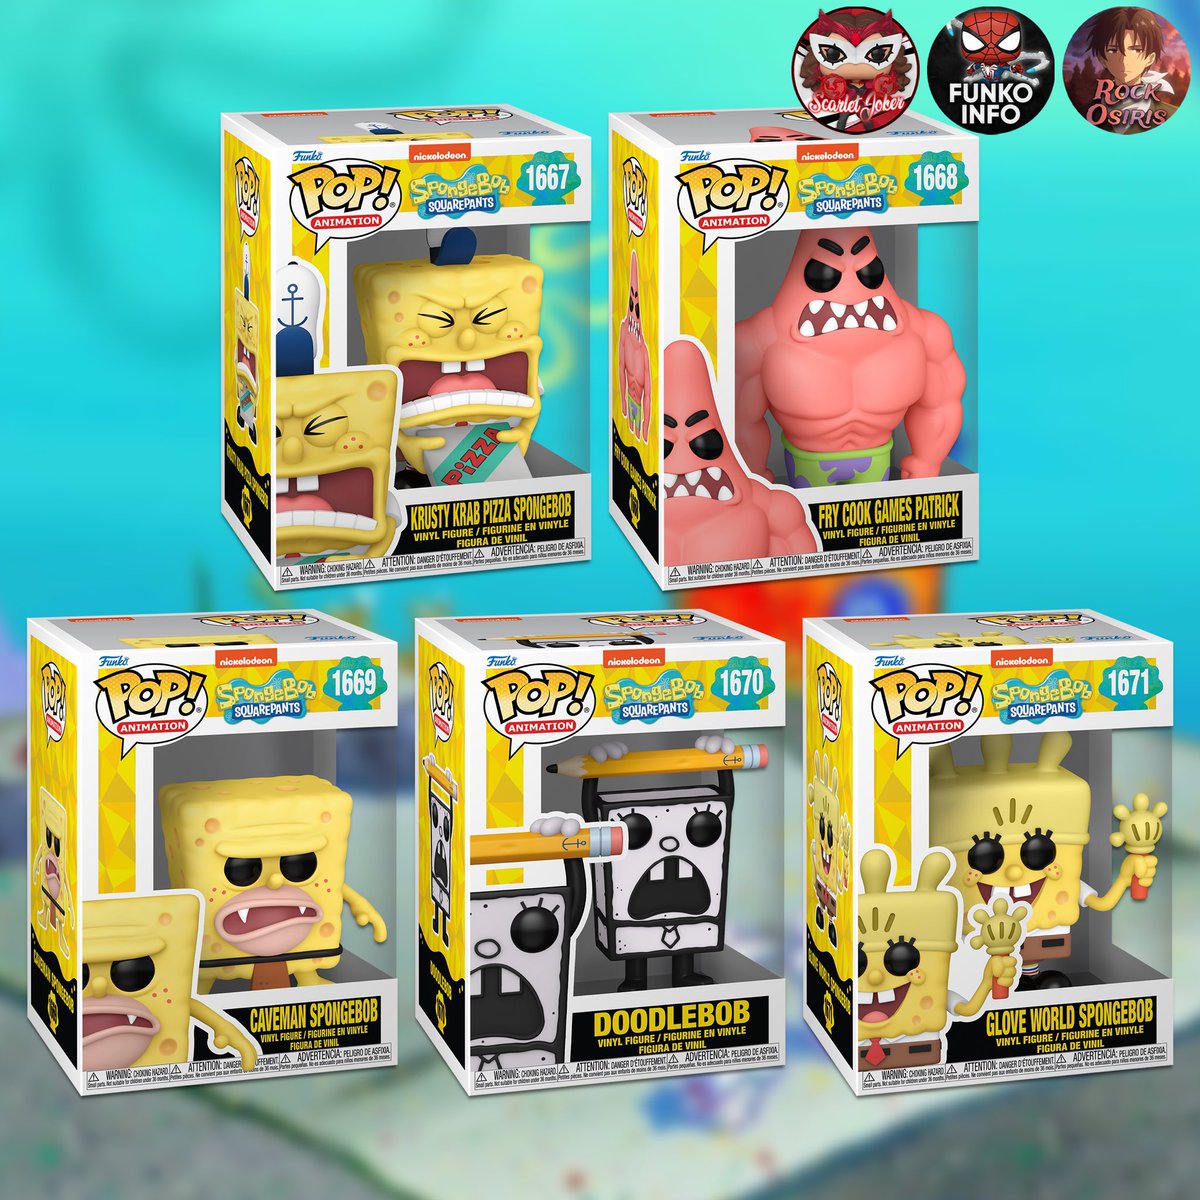 First look! The new SpongeBob  Funko POPs! Links below this week ~ Thanks @funkoinfo_ ~
EE ~ fnkpp.com/EE
Amzn ~ fnkpp.com/Amzn
MHS ~ fnkpp.com/MH
#Ad #SpongeBob #FPN #FunkoPOPNews #Funko #POP #POPVinyl #FunkoPOP #FunkoSoda